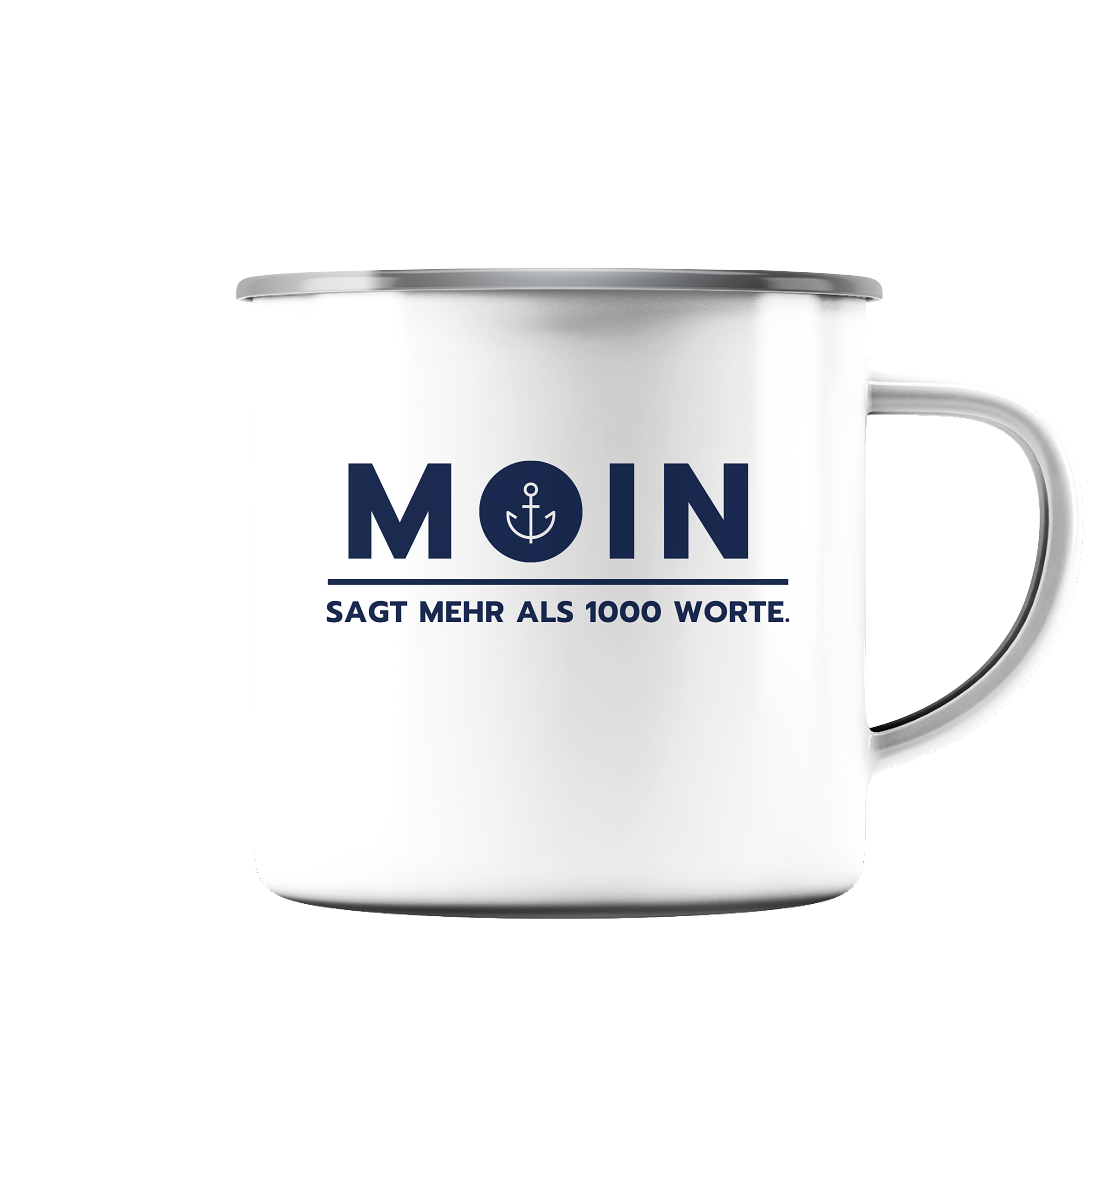 MOIN sagt mehr als 1000 Worte. - Emaille Tasse (Silber)